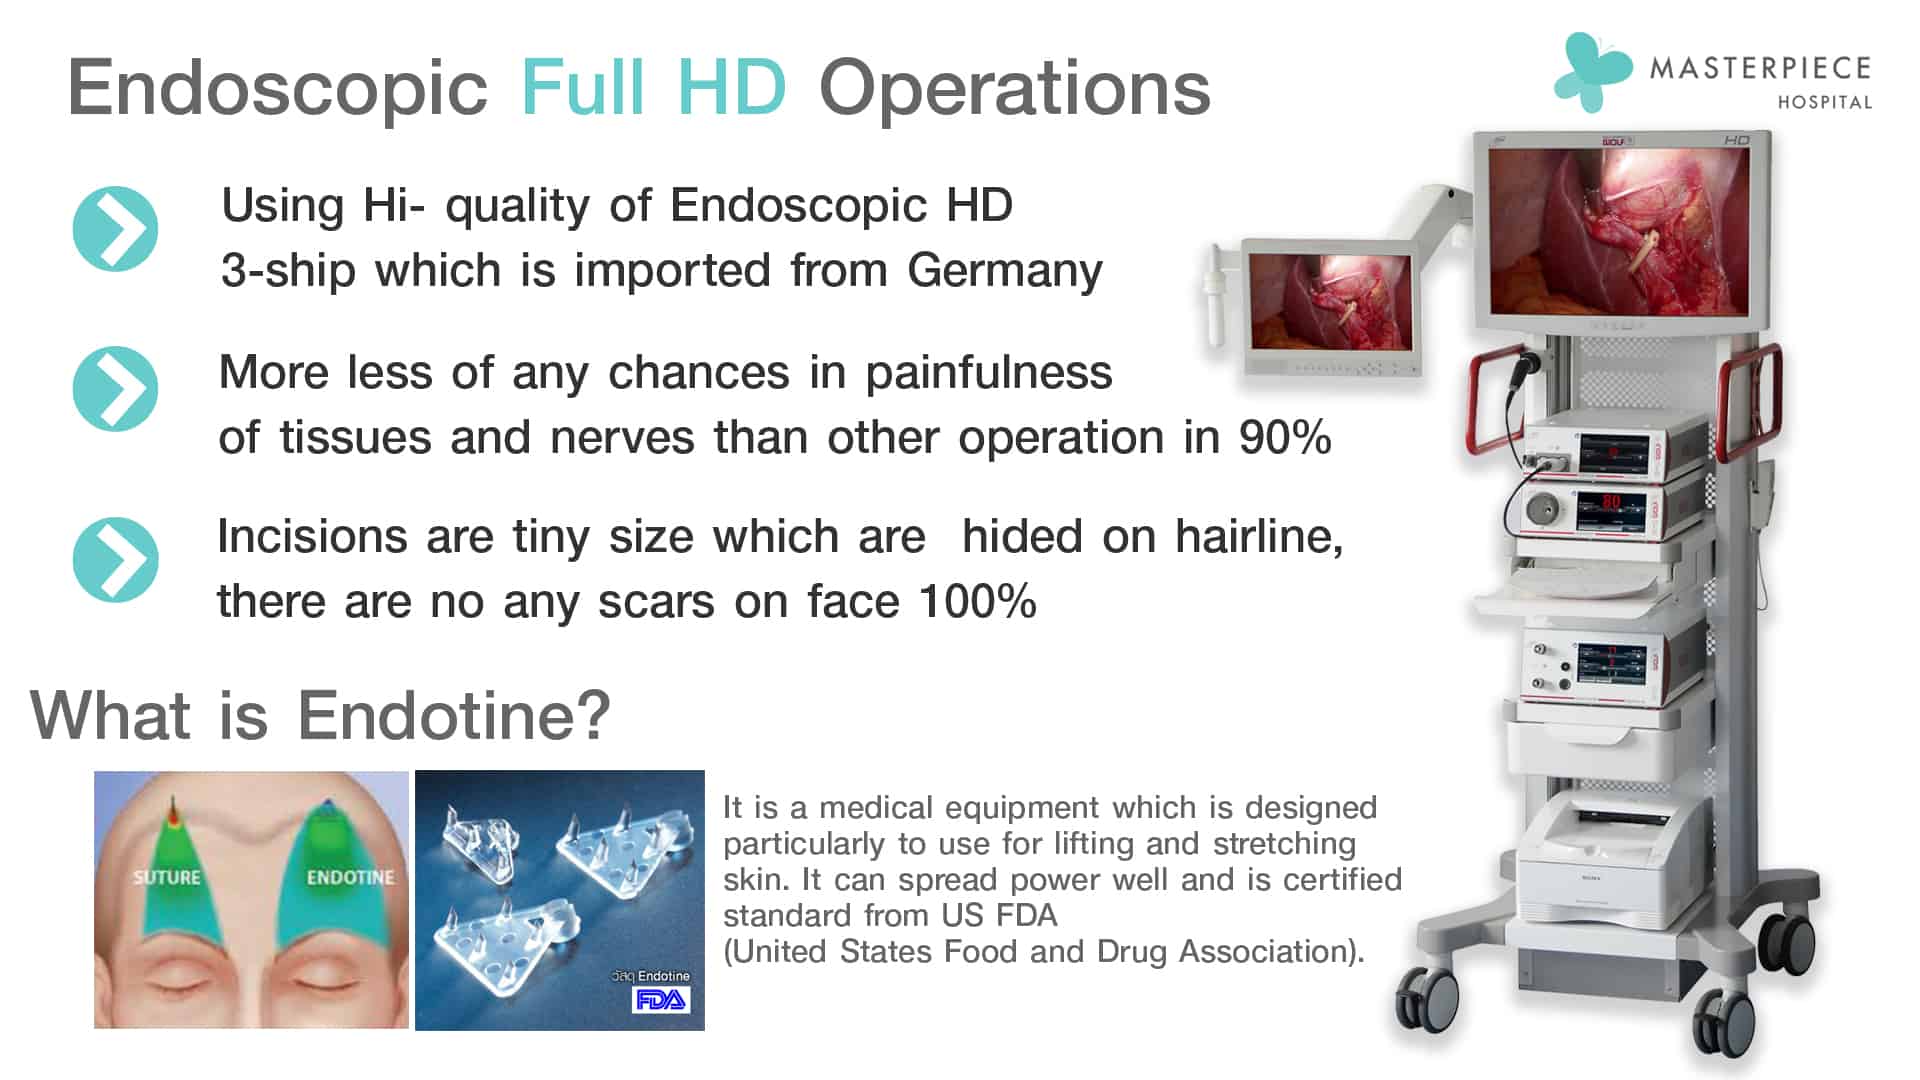 Endoscopic Full HD Operations